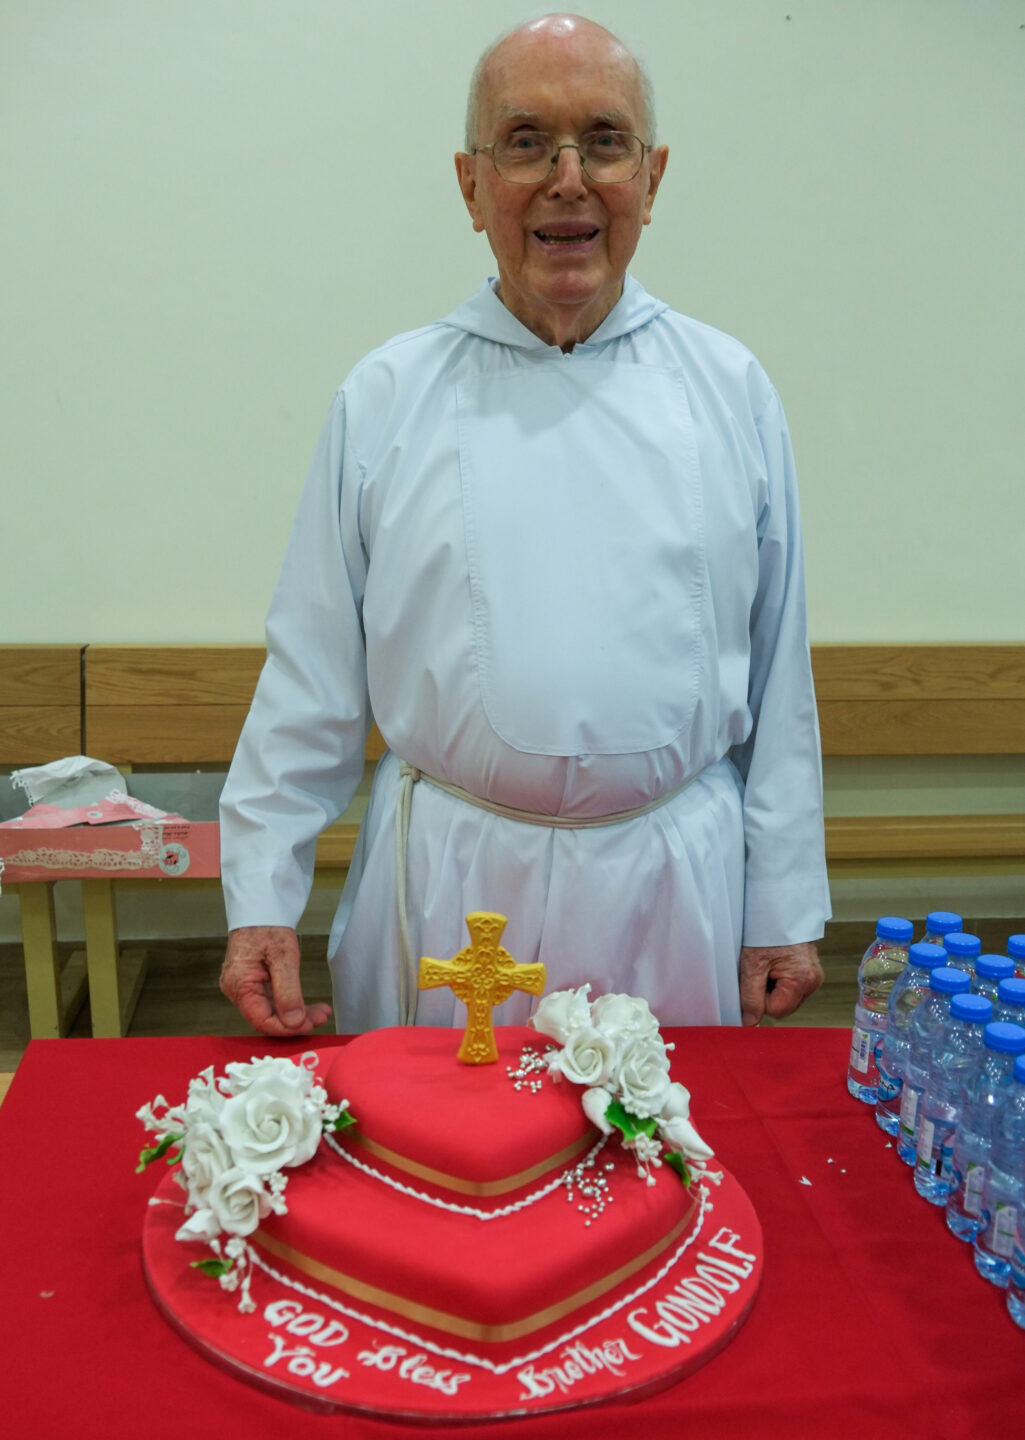 Torte mit Kreuz: "Gott segne dich", steht auf dem Geburtstagskuchen für Gandolf Wild.